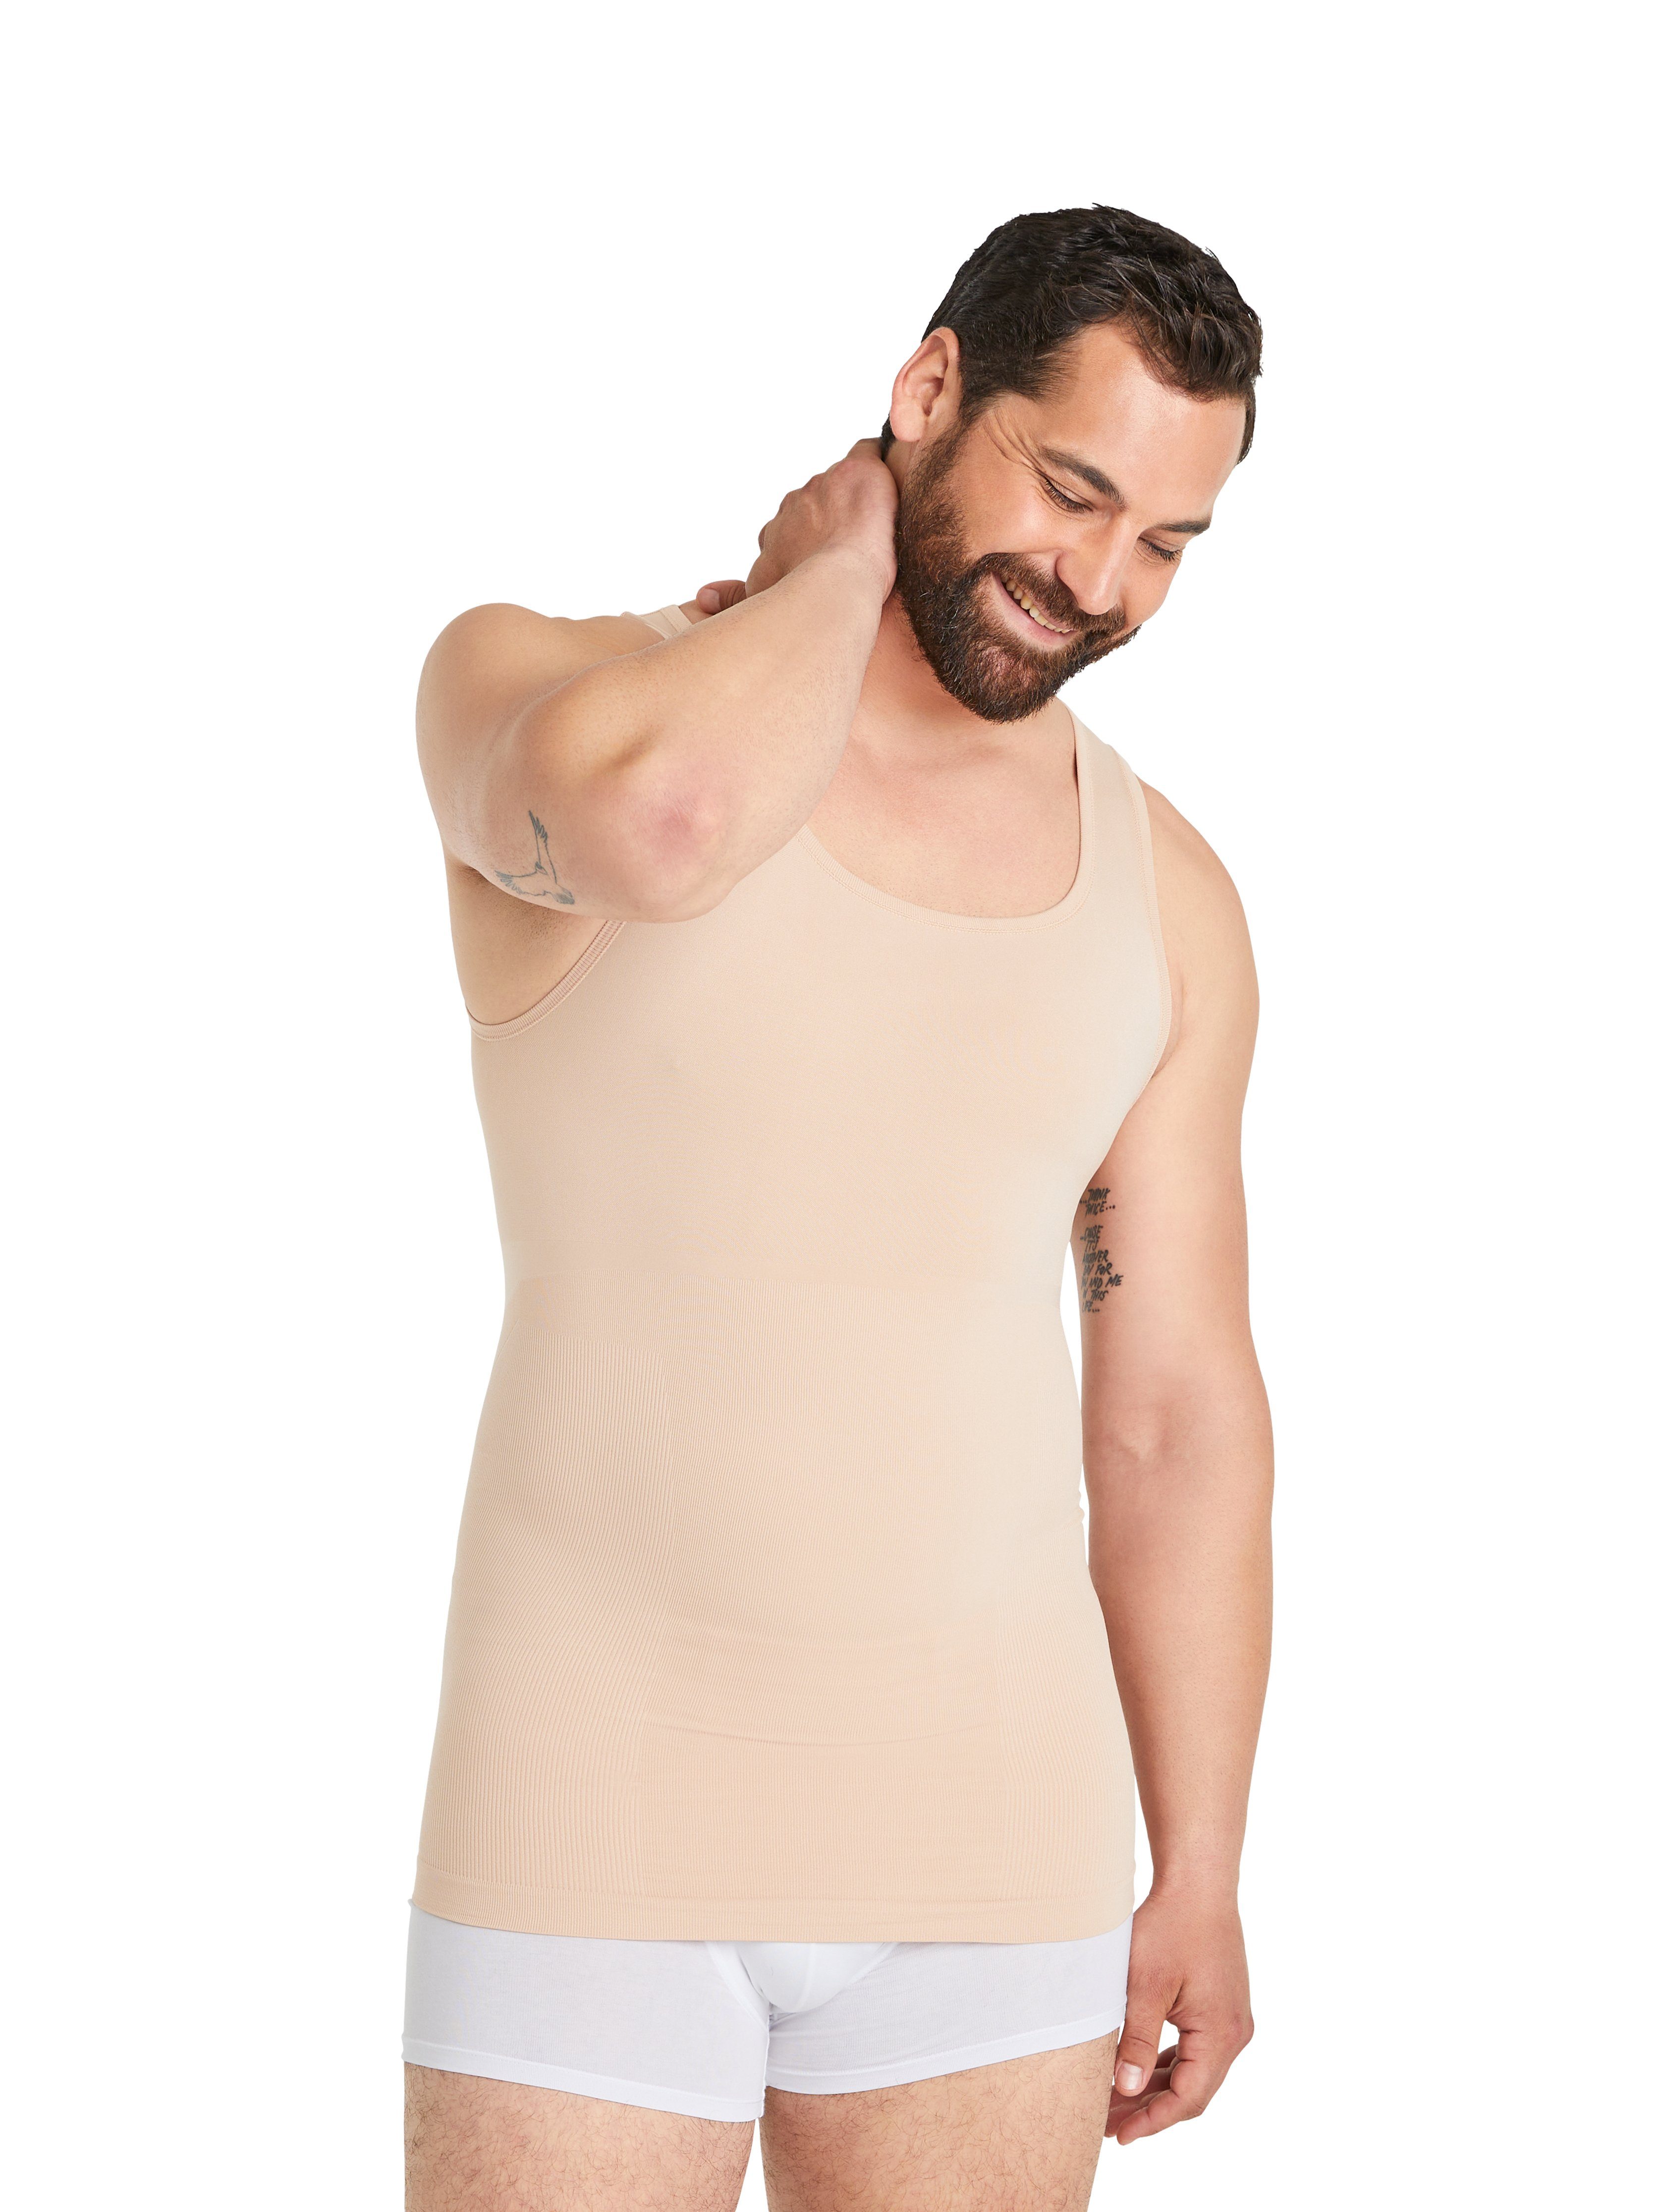 FINN Design Shapinghemd Seamless Kompressions-Unterhemd Herren ohne Nähte Starker Body-Shaper für Männer Light-Beige